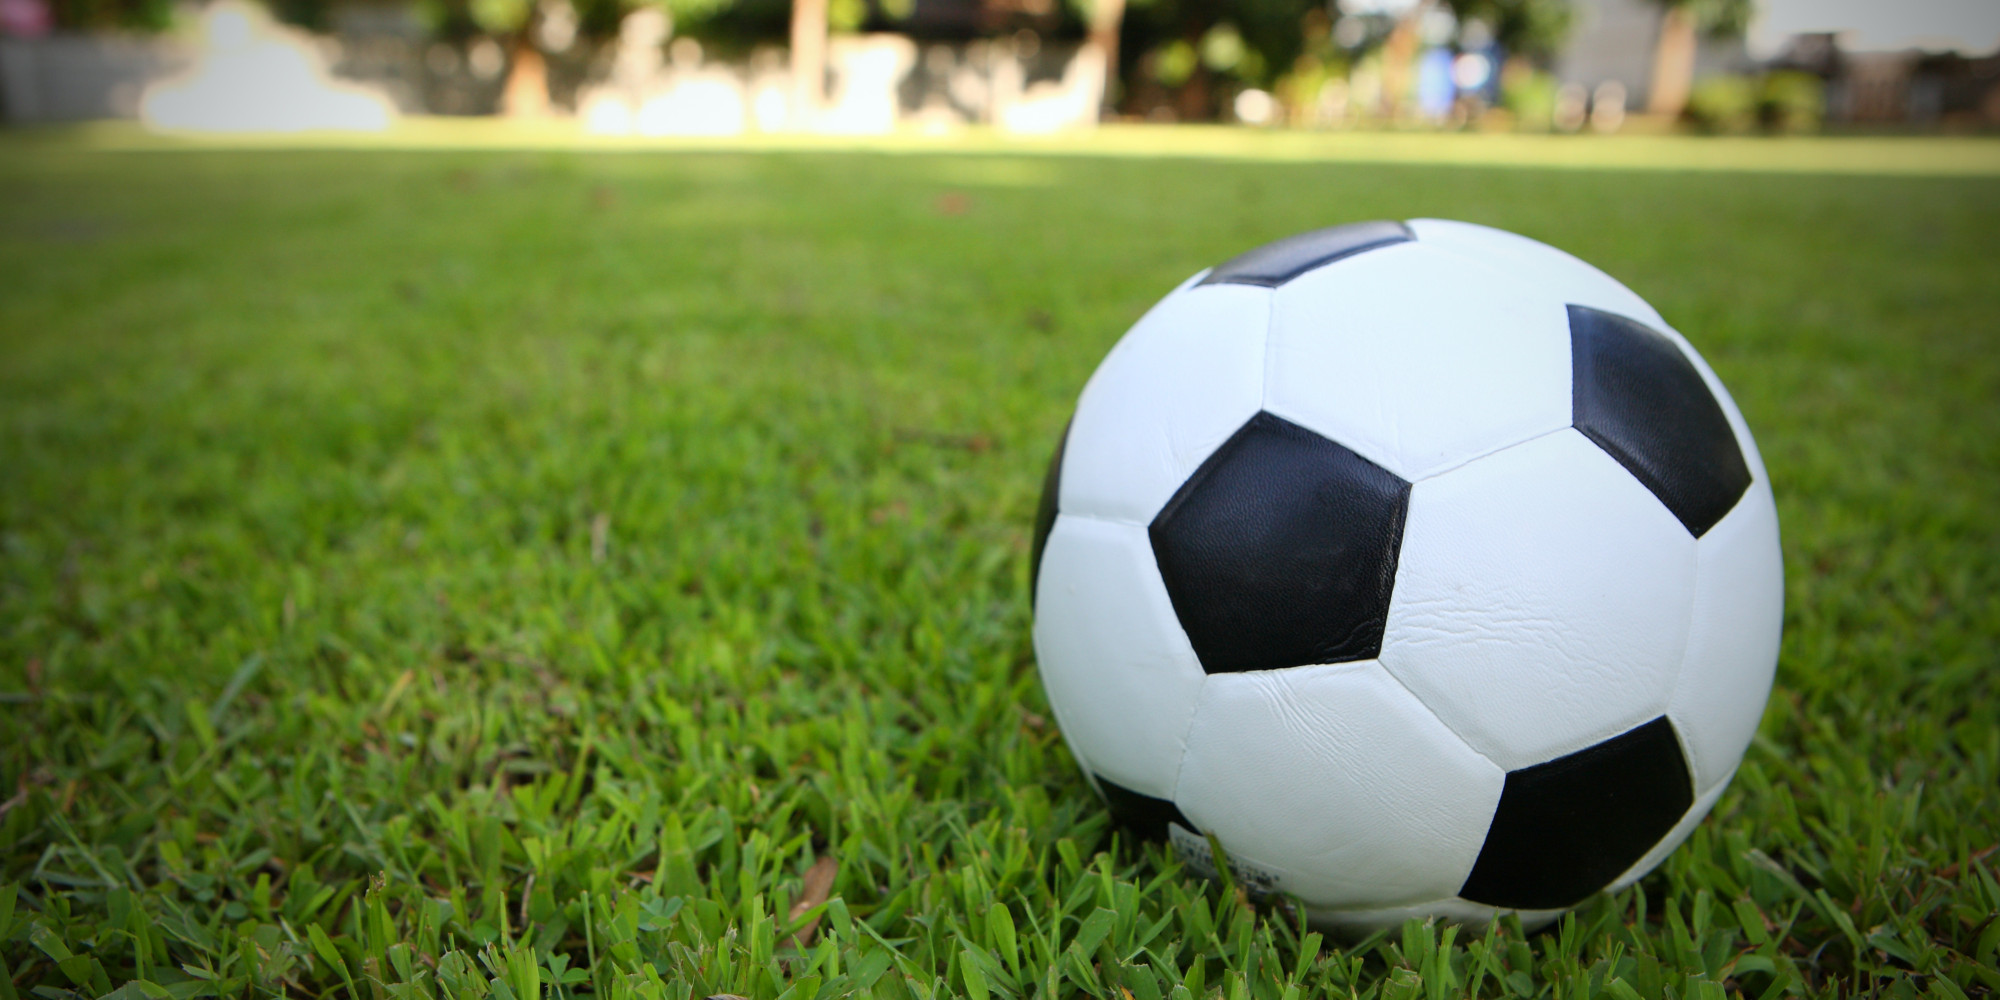 futebol wallpaper,soccer ball,football,ball,grass,soccer